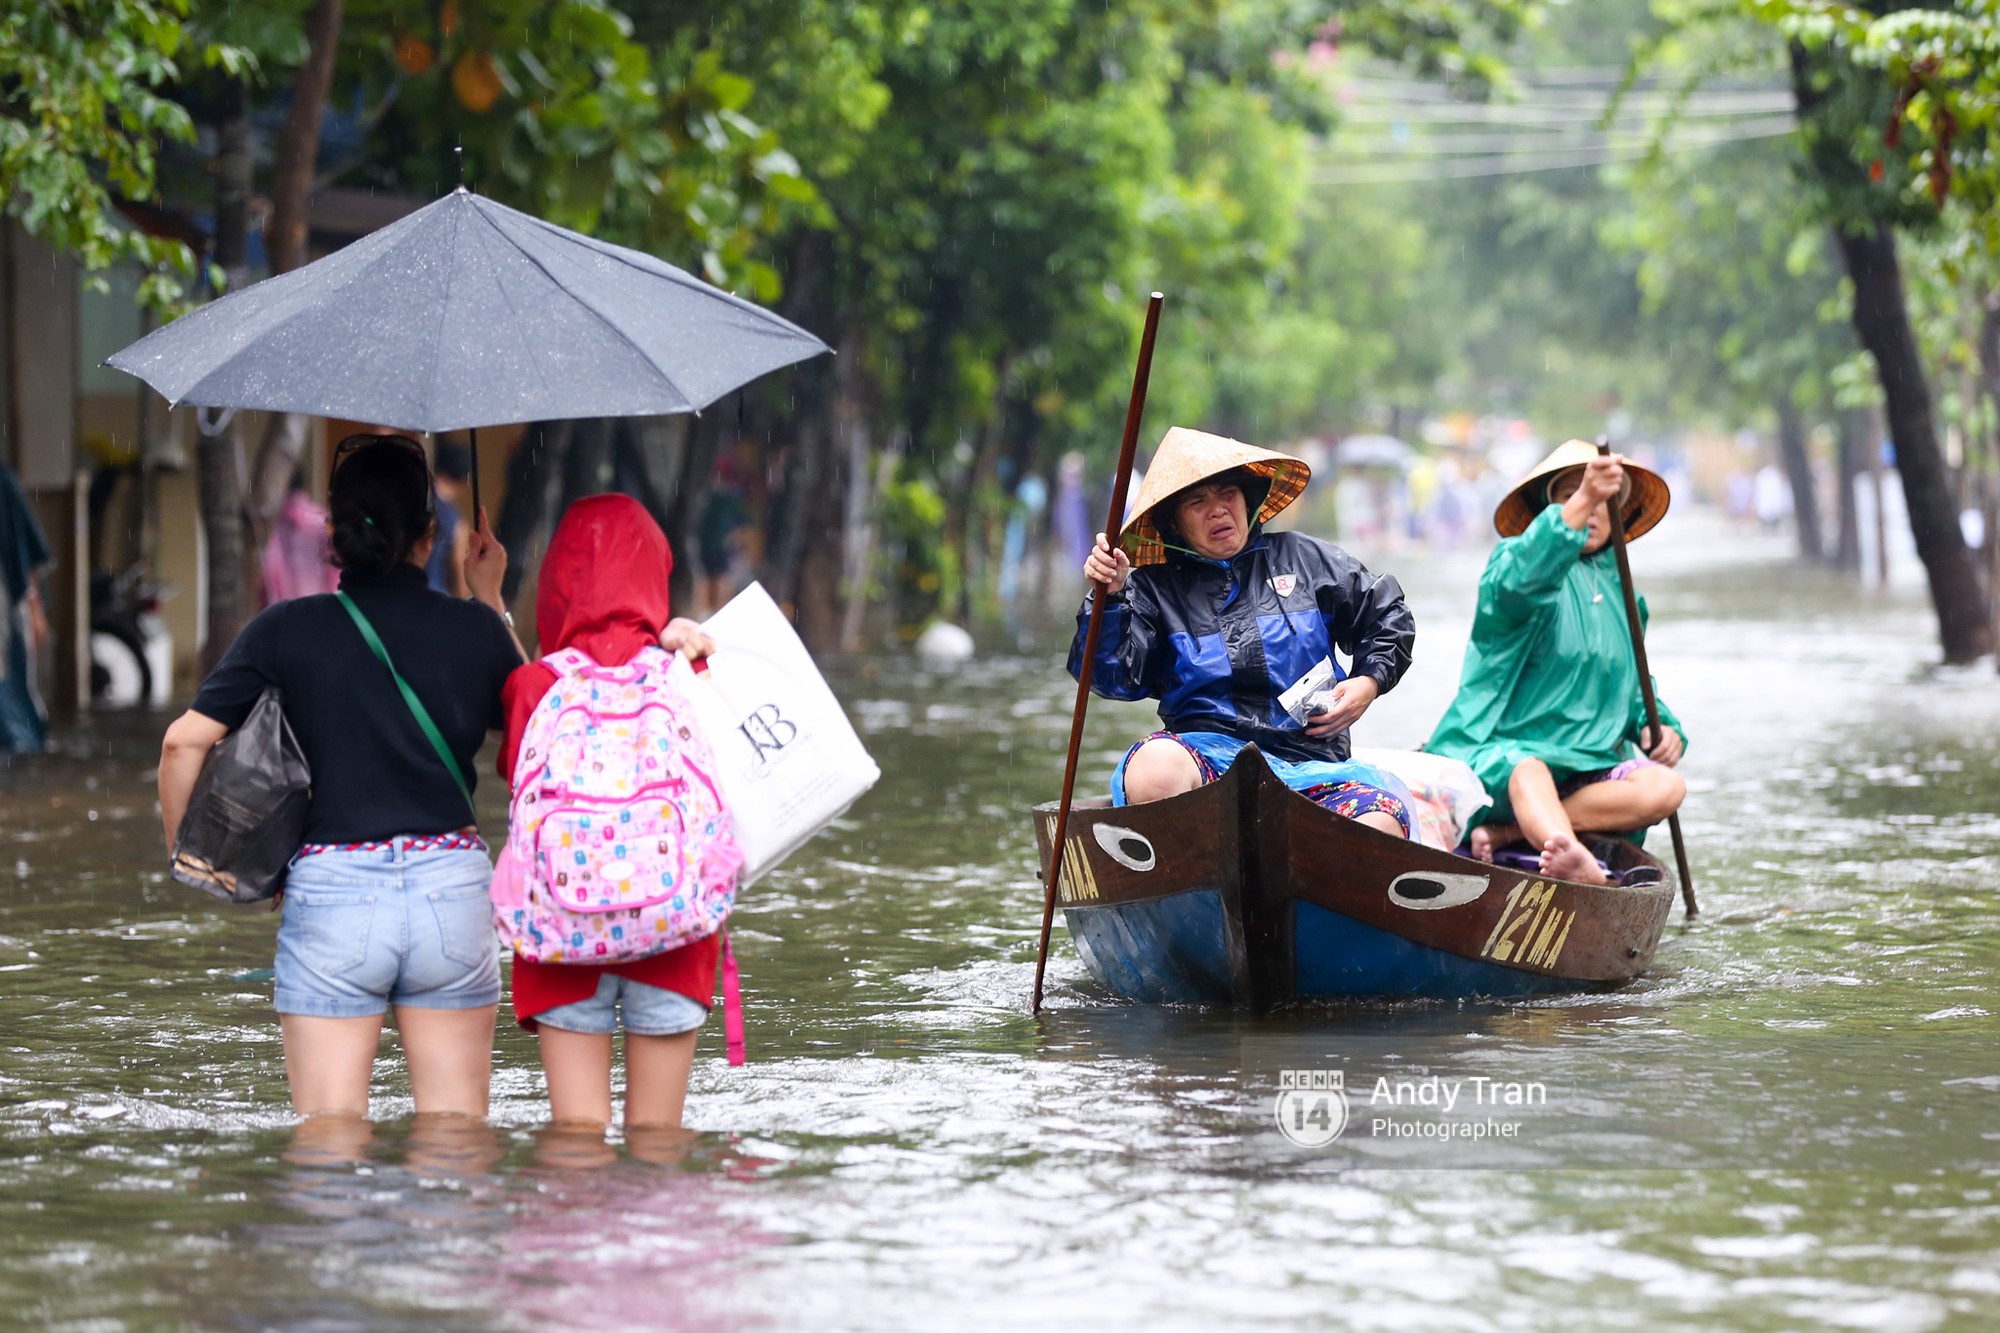 Chùm ảnh: Hội An nước ngập thành sông do ảnh hưởng của bão, người dân và du khách chật vật dùng thuyền bè di chuyển - Ảnh 5.